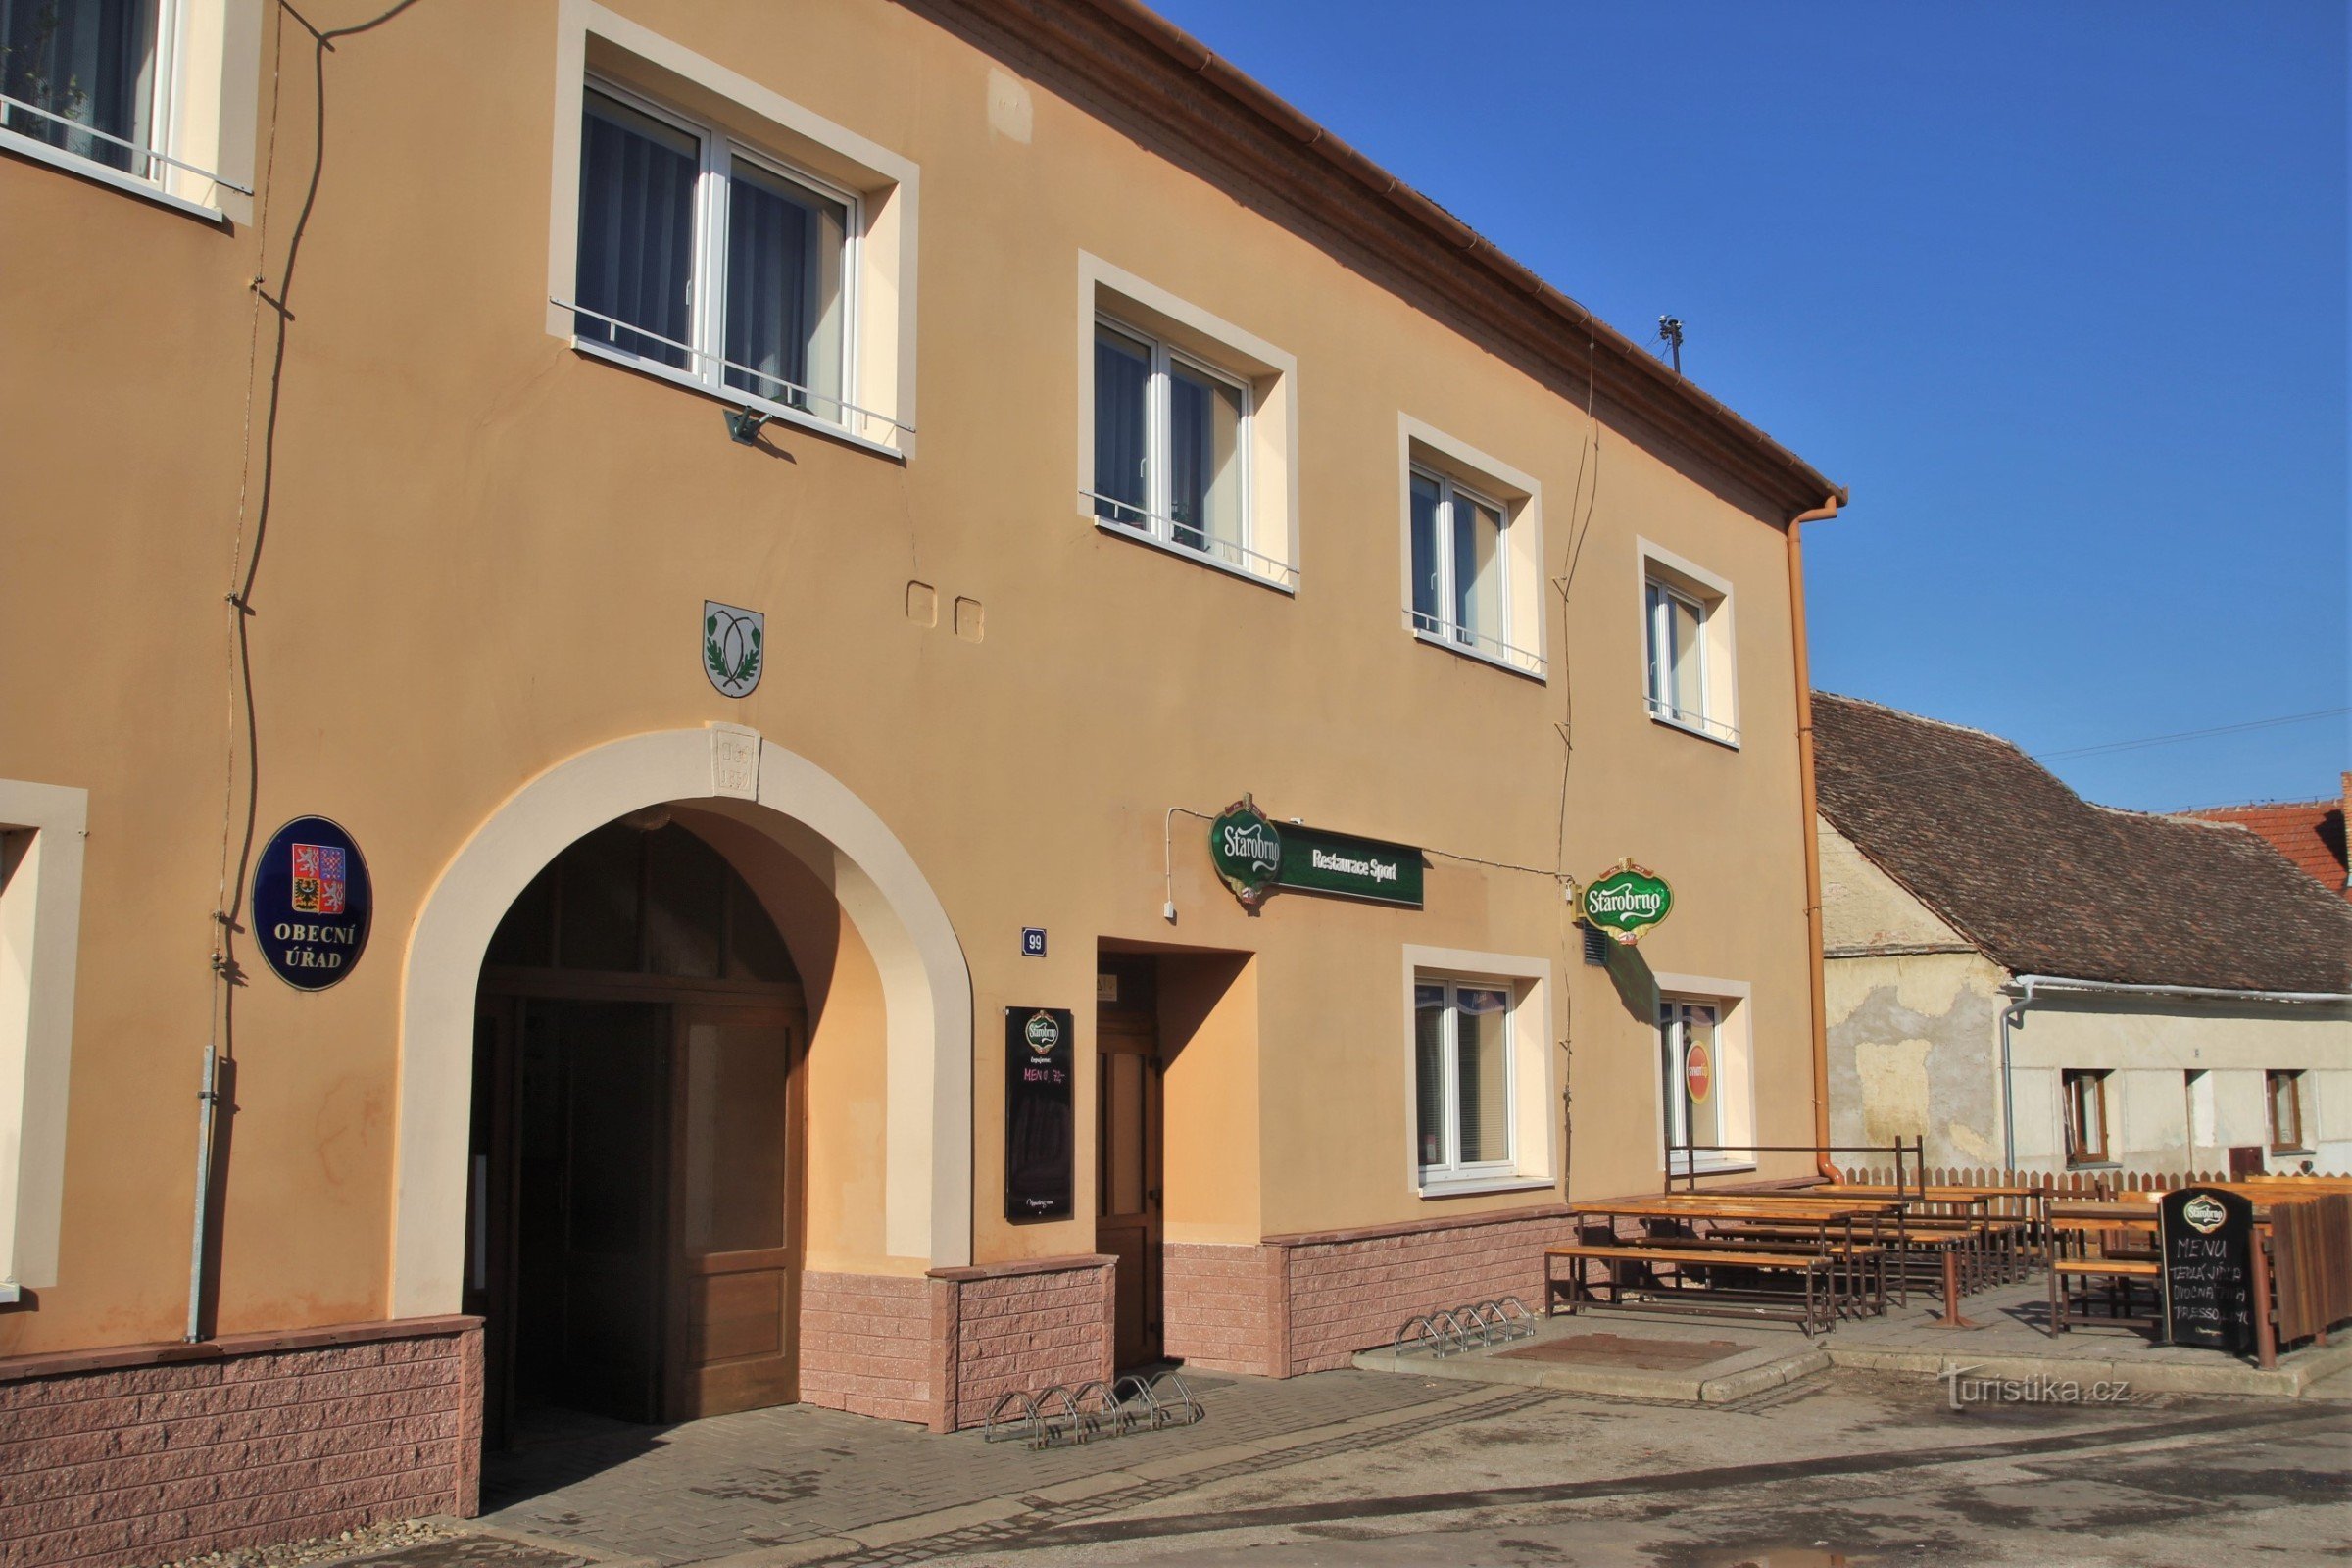 Pouzdřany - kommunalt kontor og kro i landsbyen